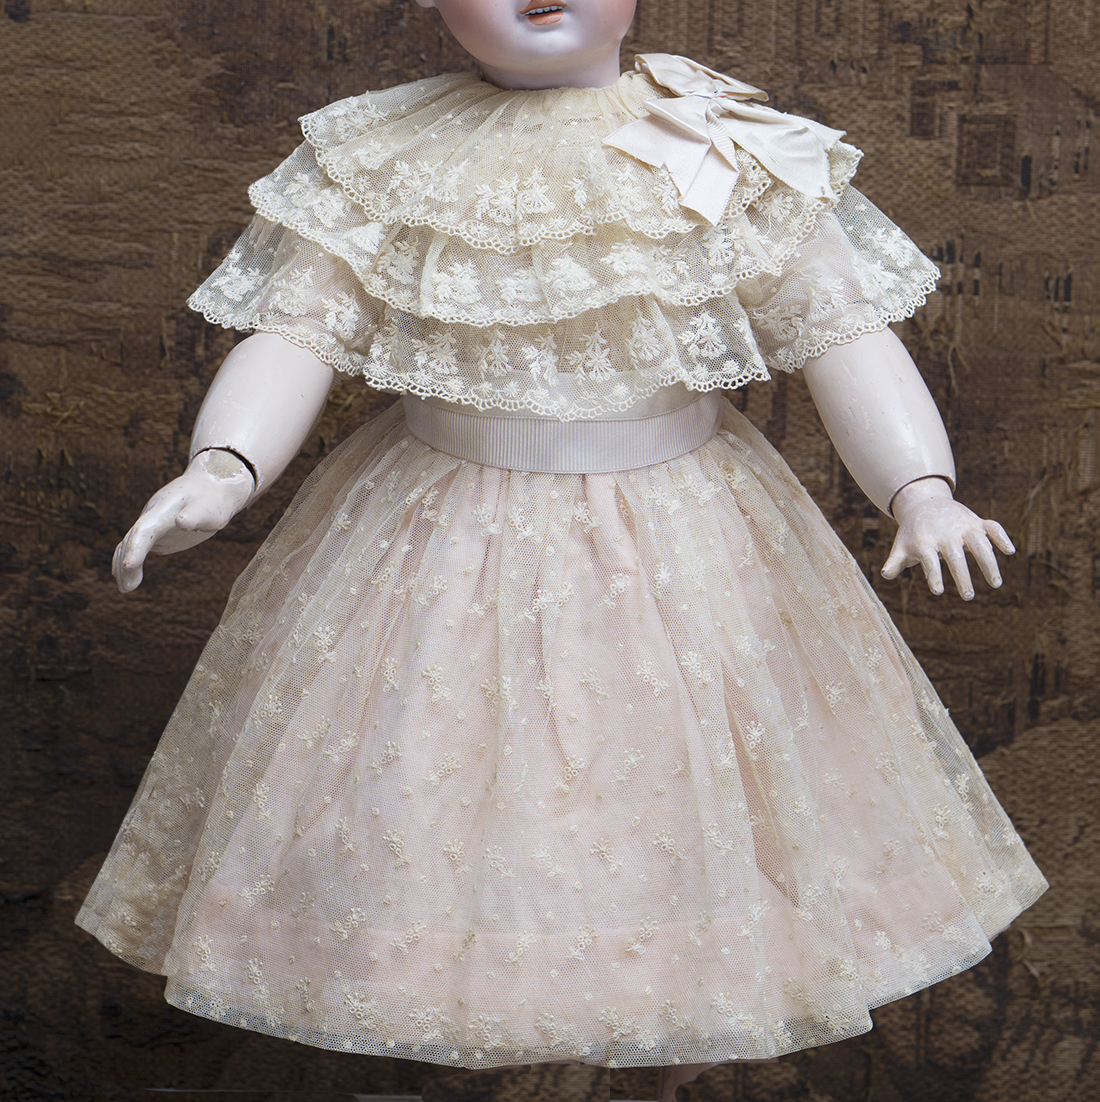 Antique Lace doll dress